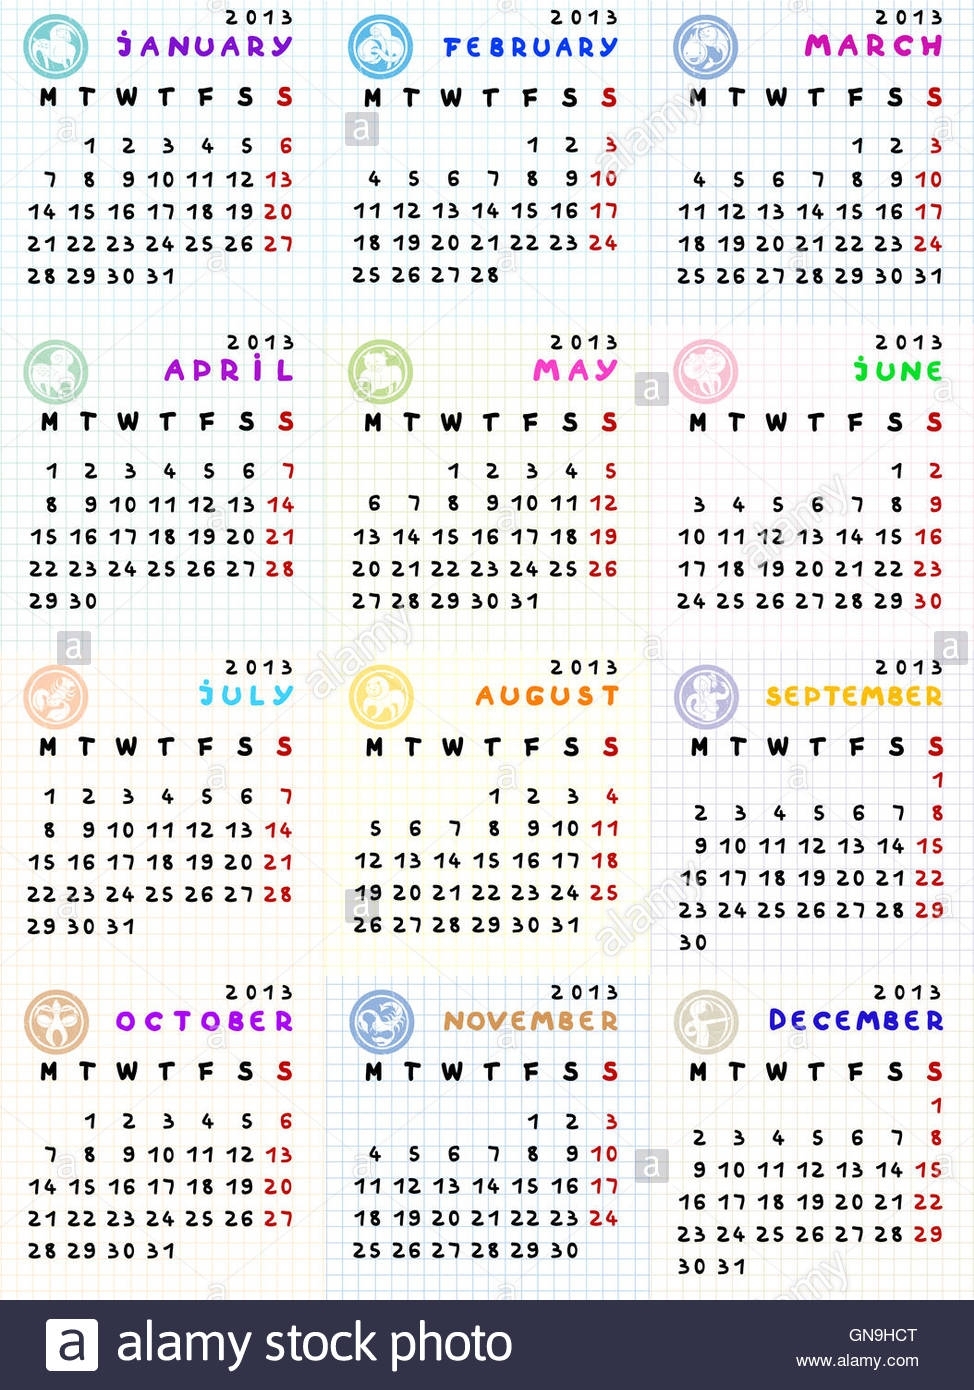 2013 Calendar With Zodiac Signs Stock Photo: 116381240 - Alamy